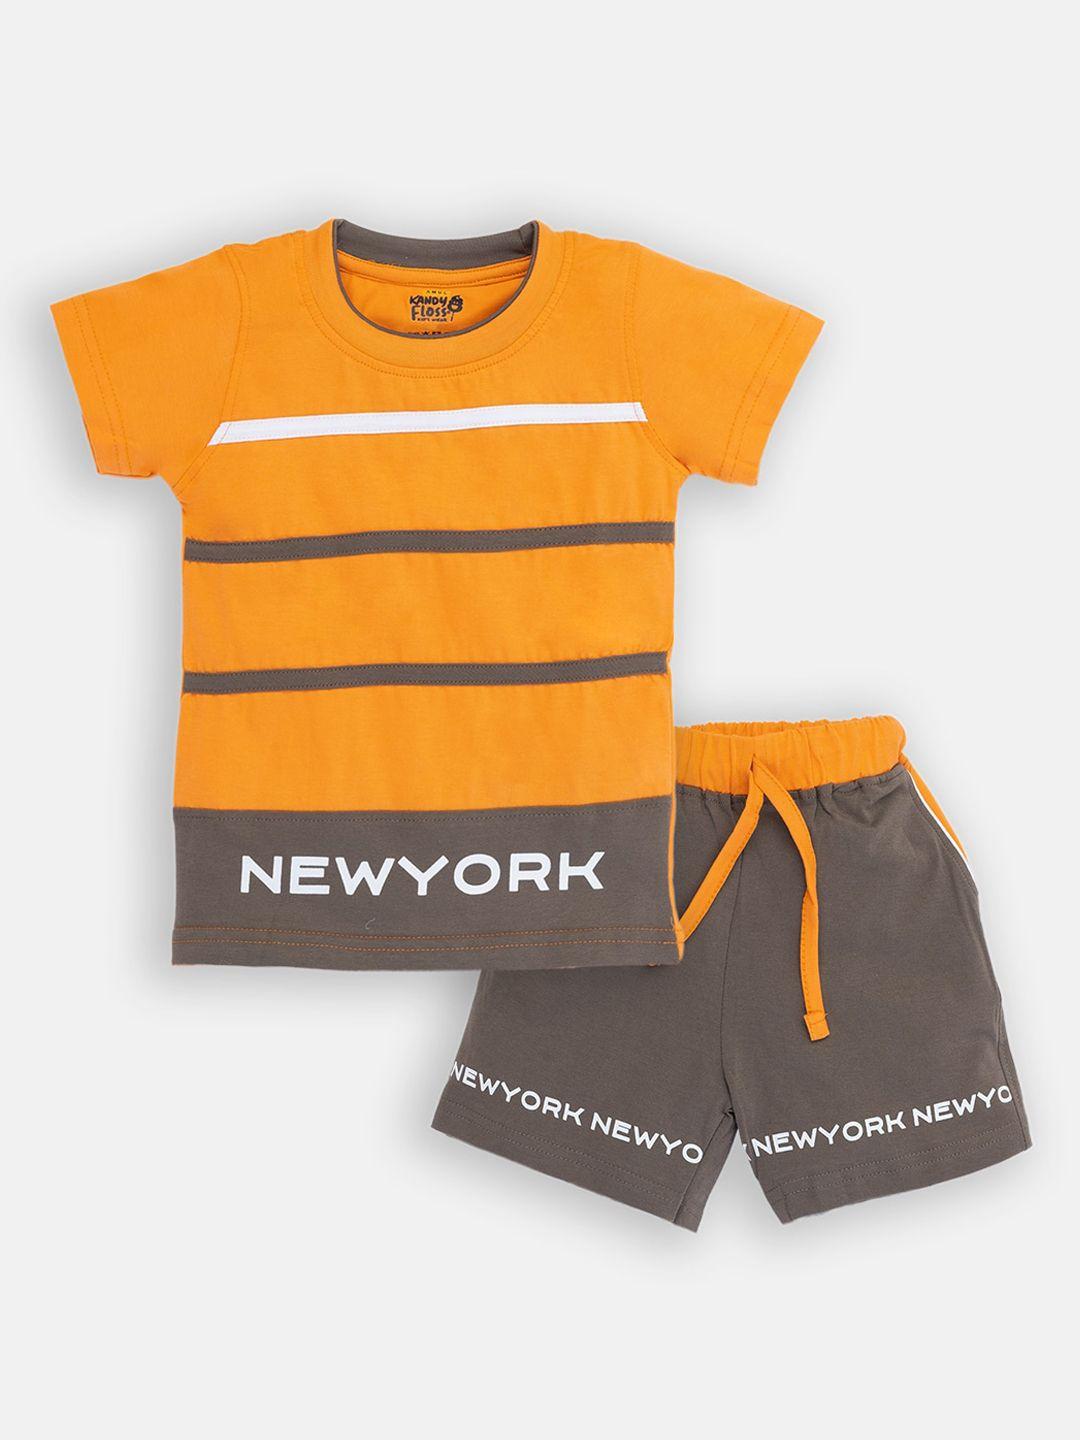 amul kandyfloss boys orange & grey cotton printed clothing set